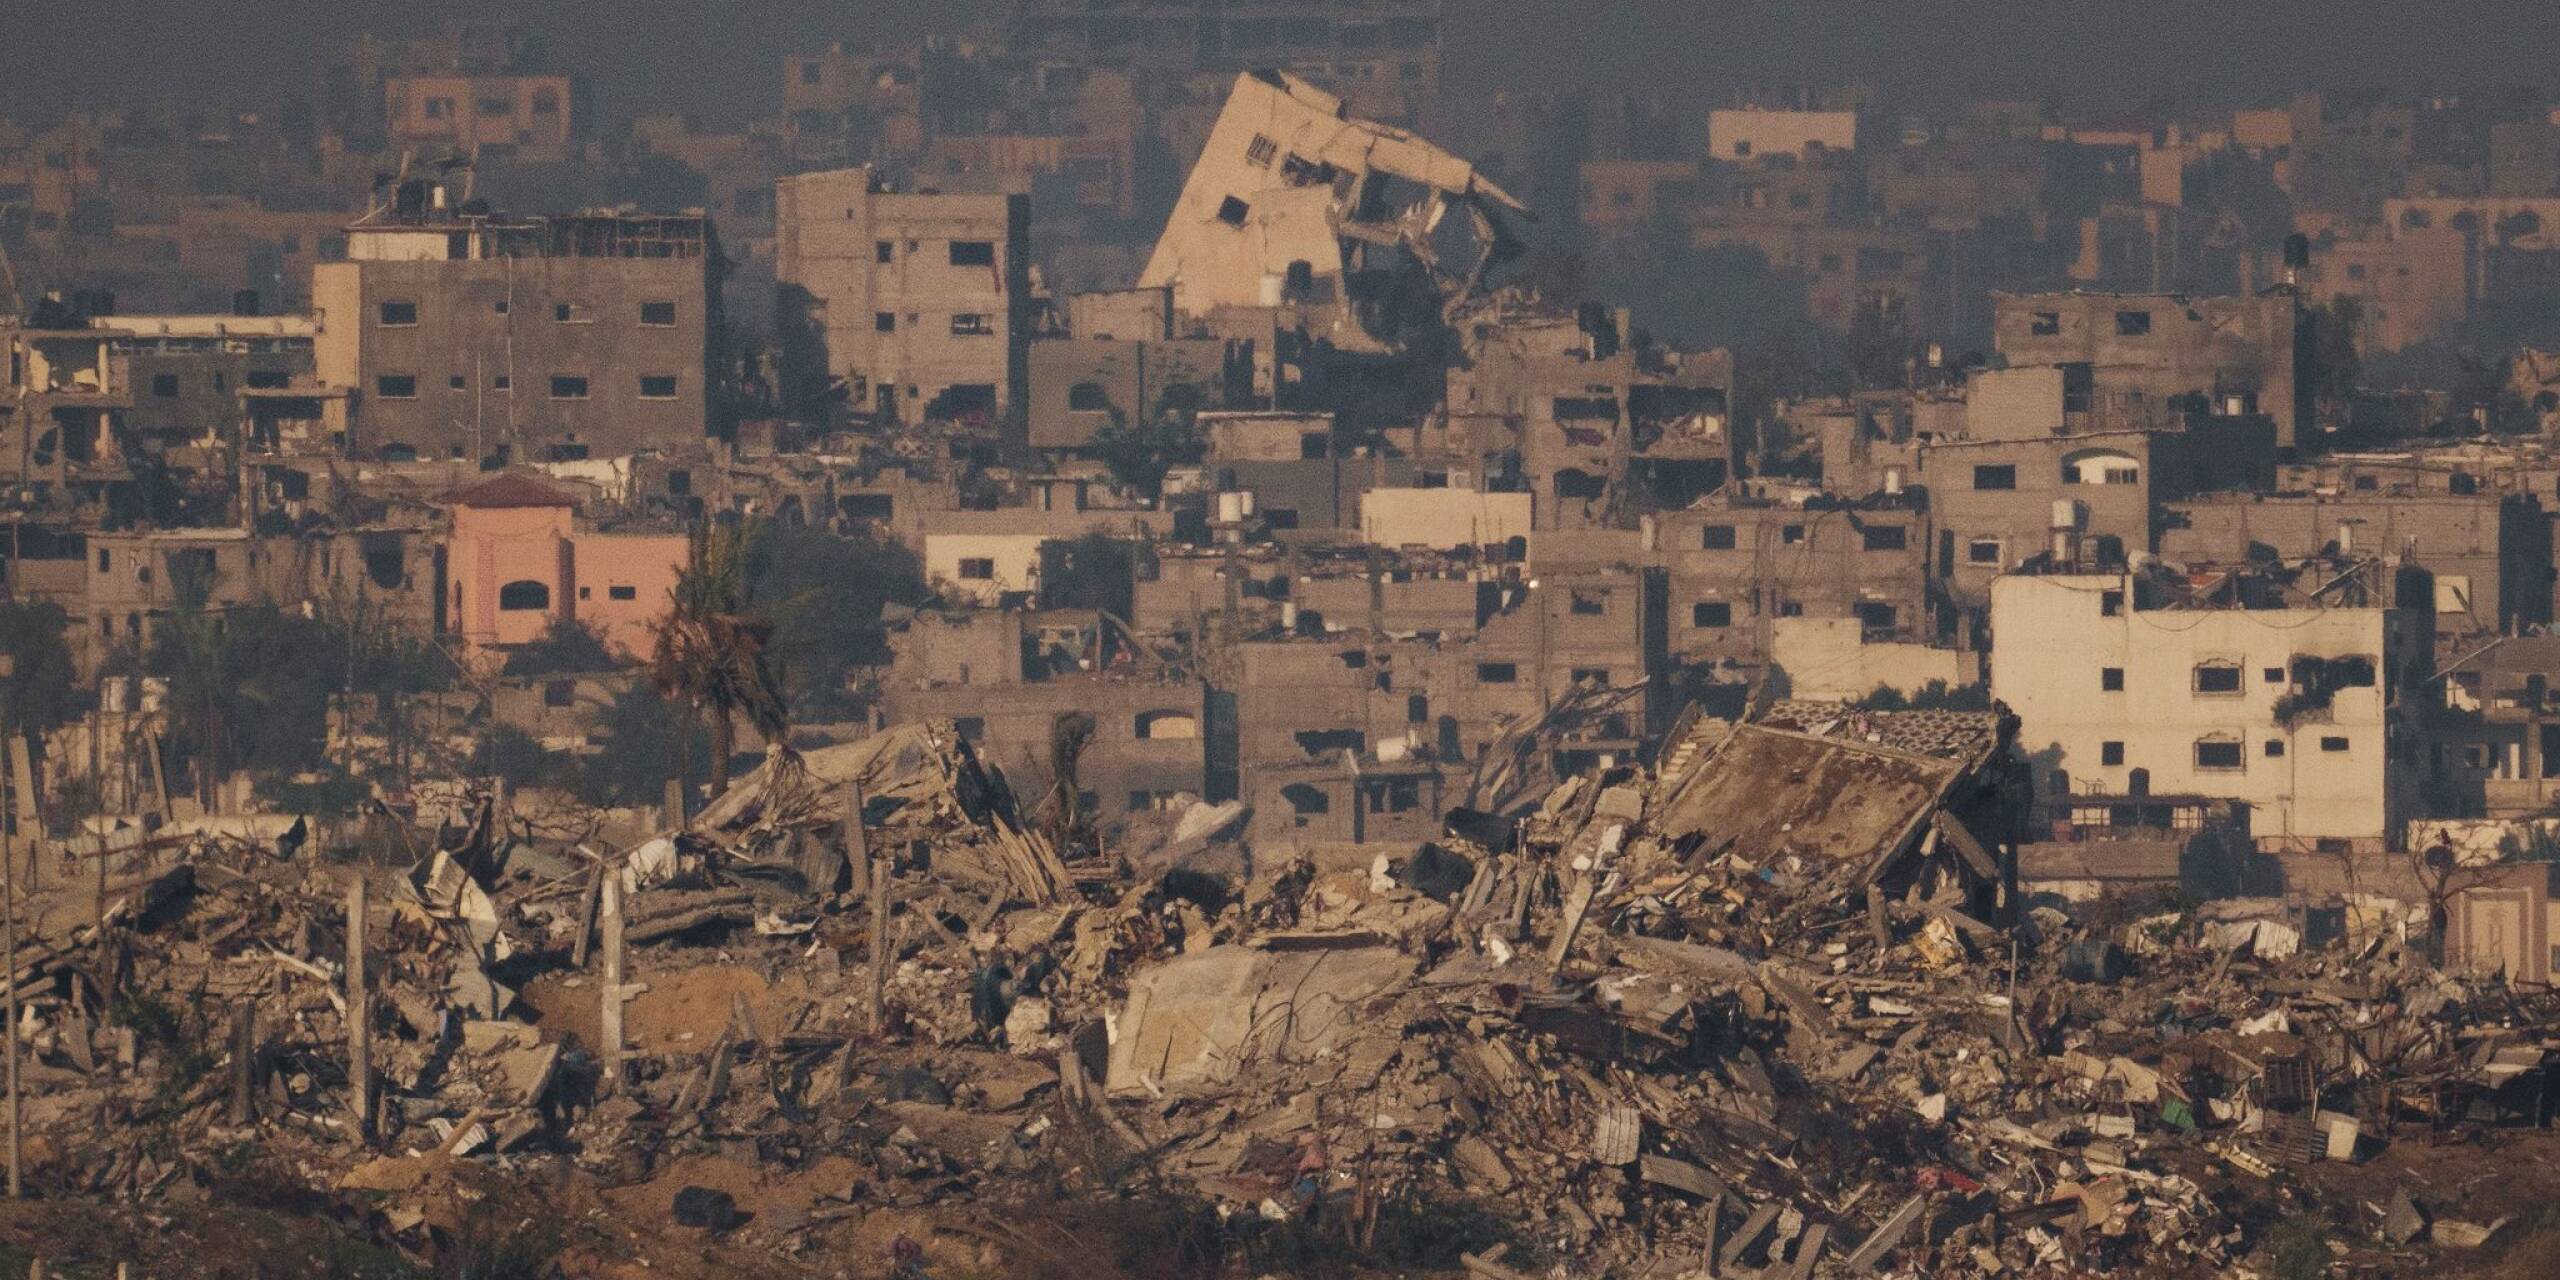 Fast nichts mehr unbeschädigt: Zerstörte Gebäude nach einem israelischen Luftangriff im nördlichen Gazastreifen.